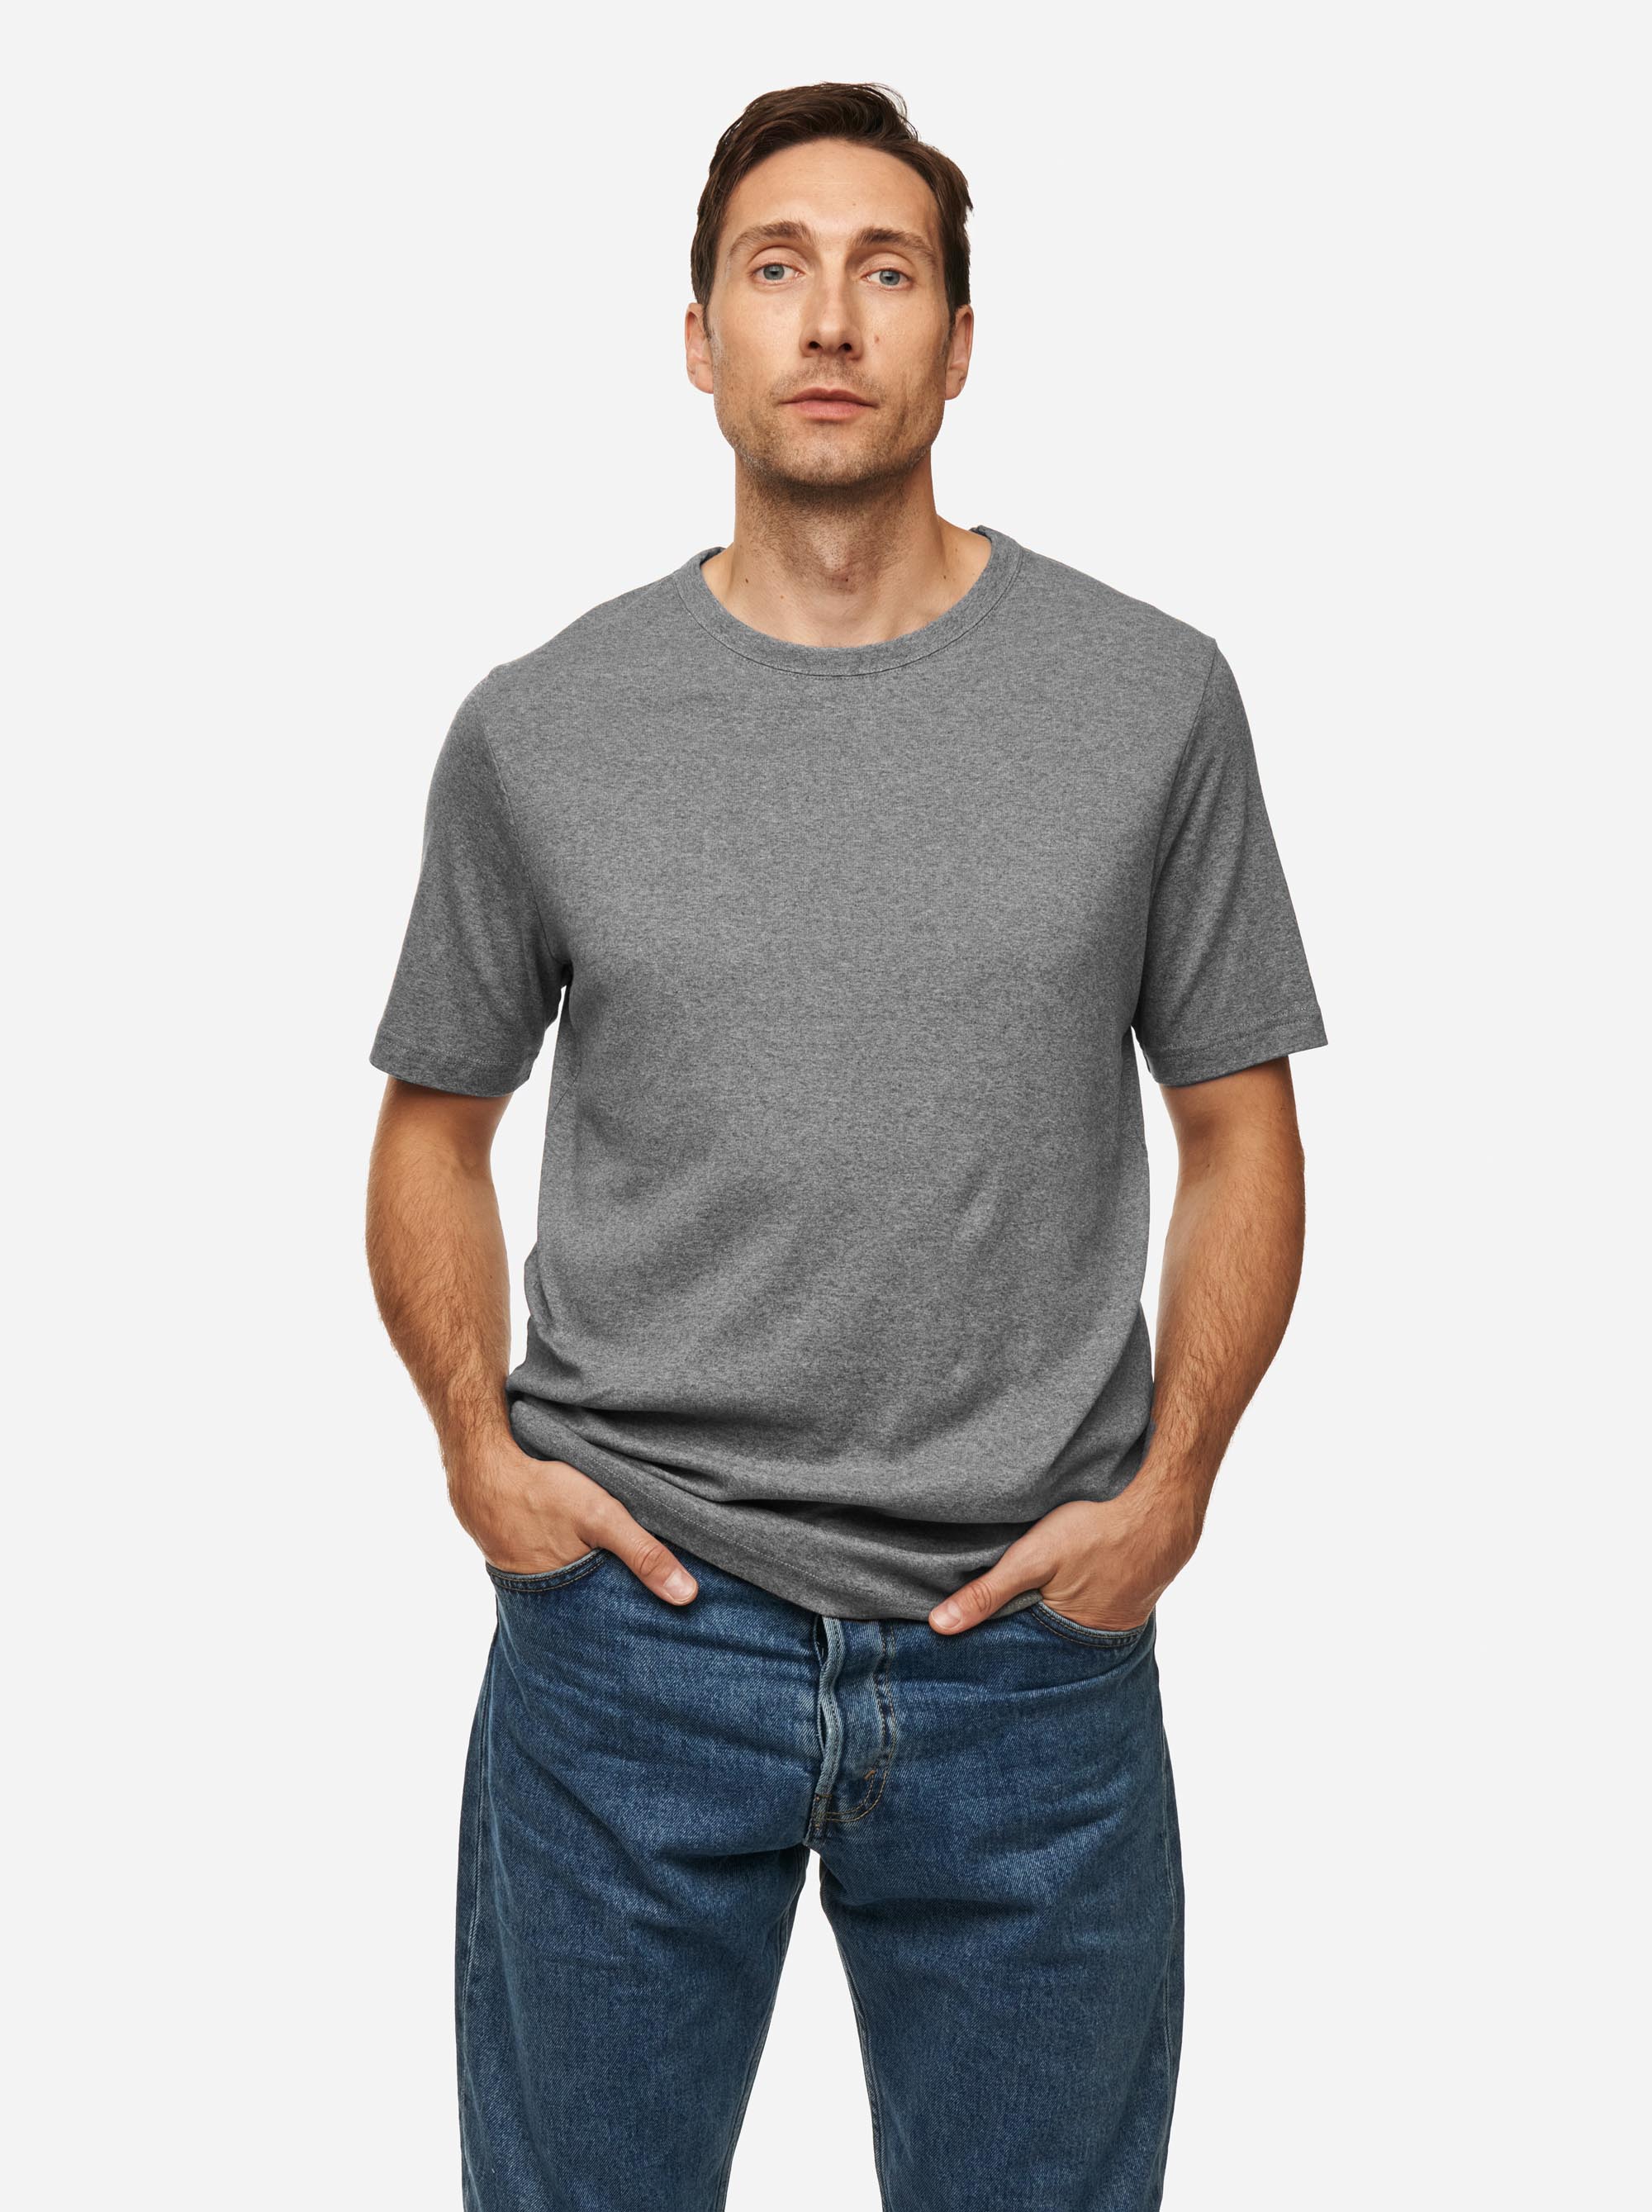 Teym - The T-Shirt - Men - Melange grey - 1B